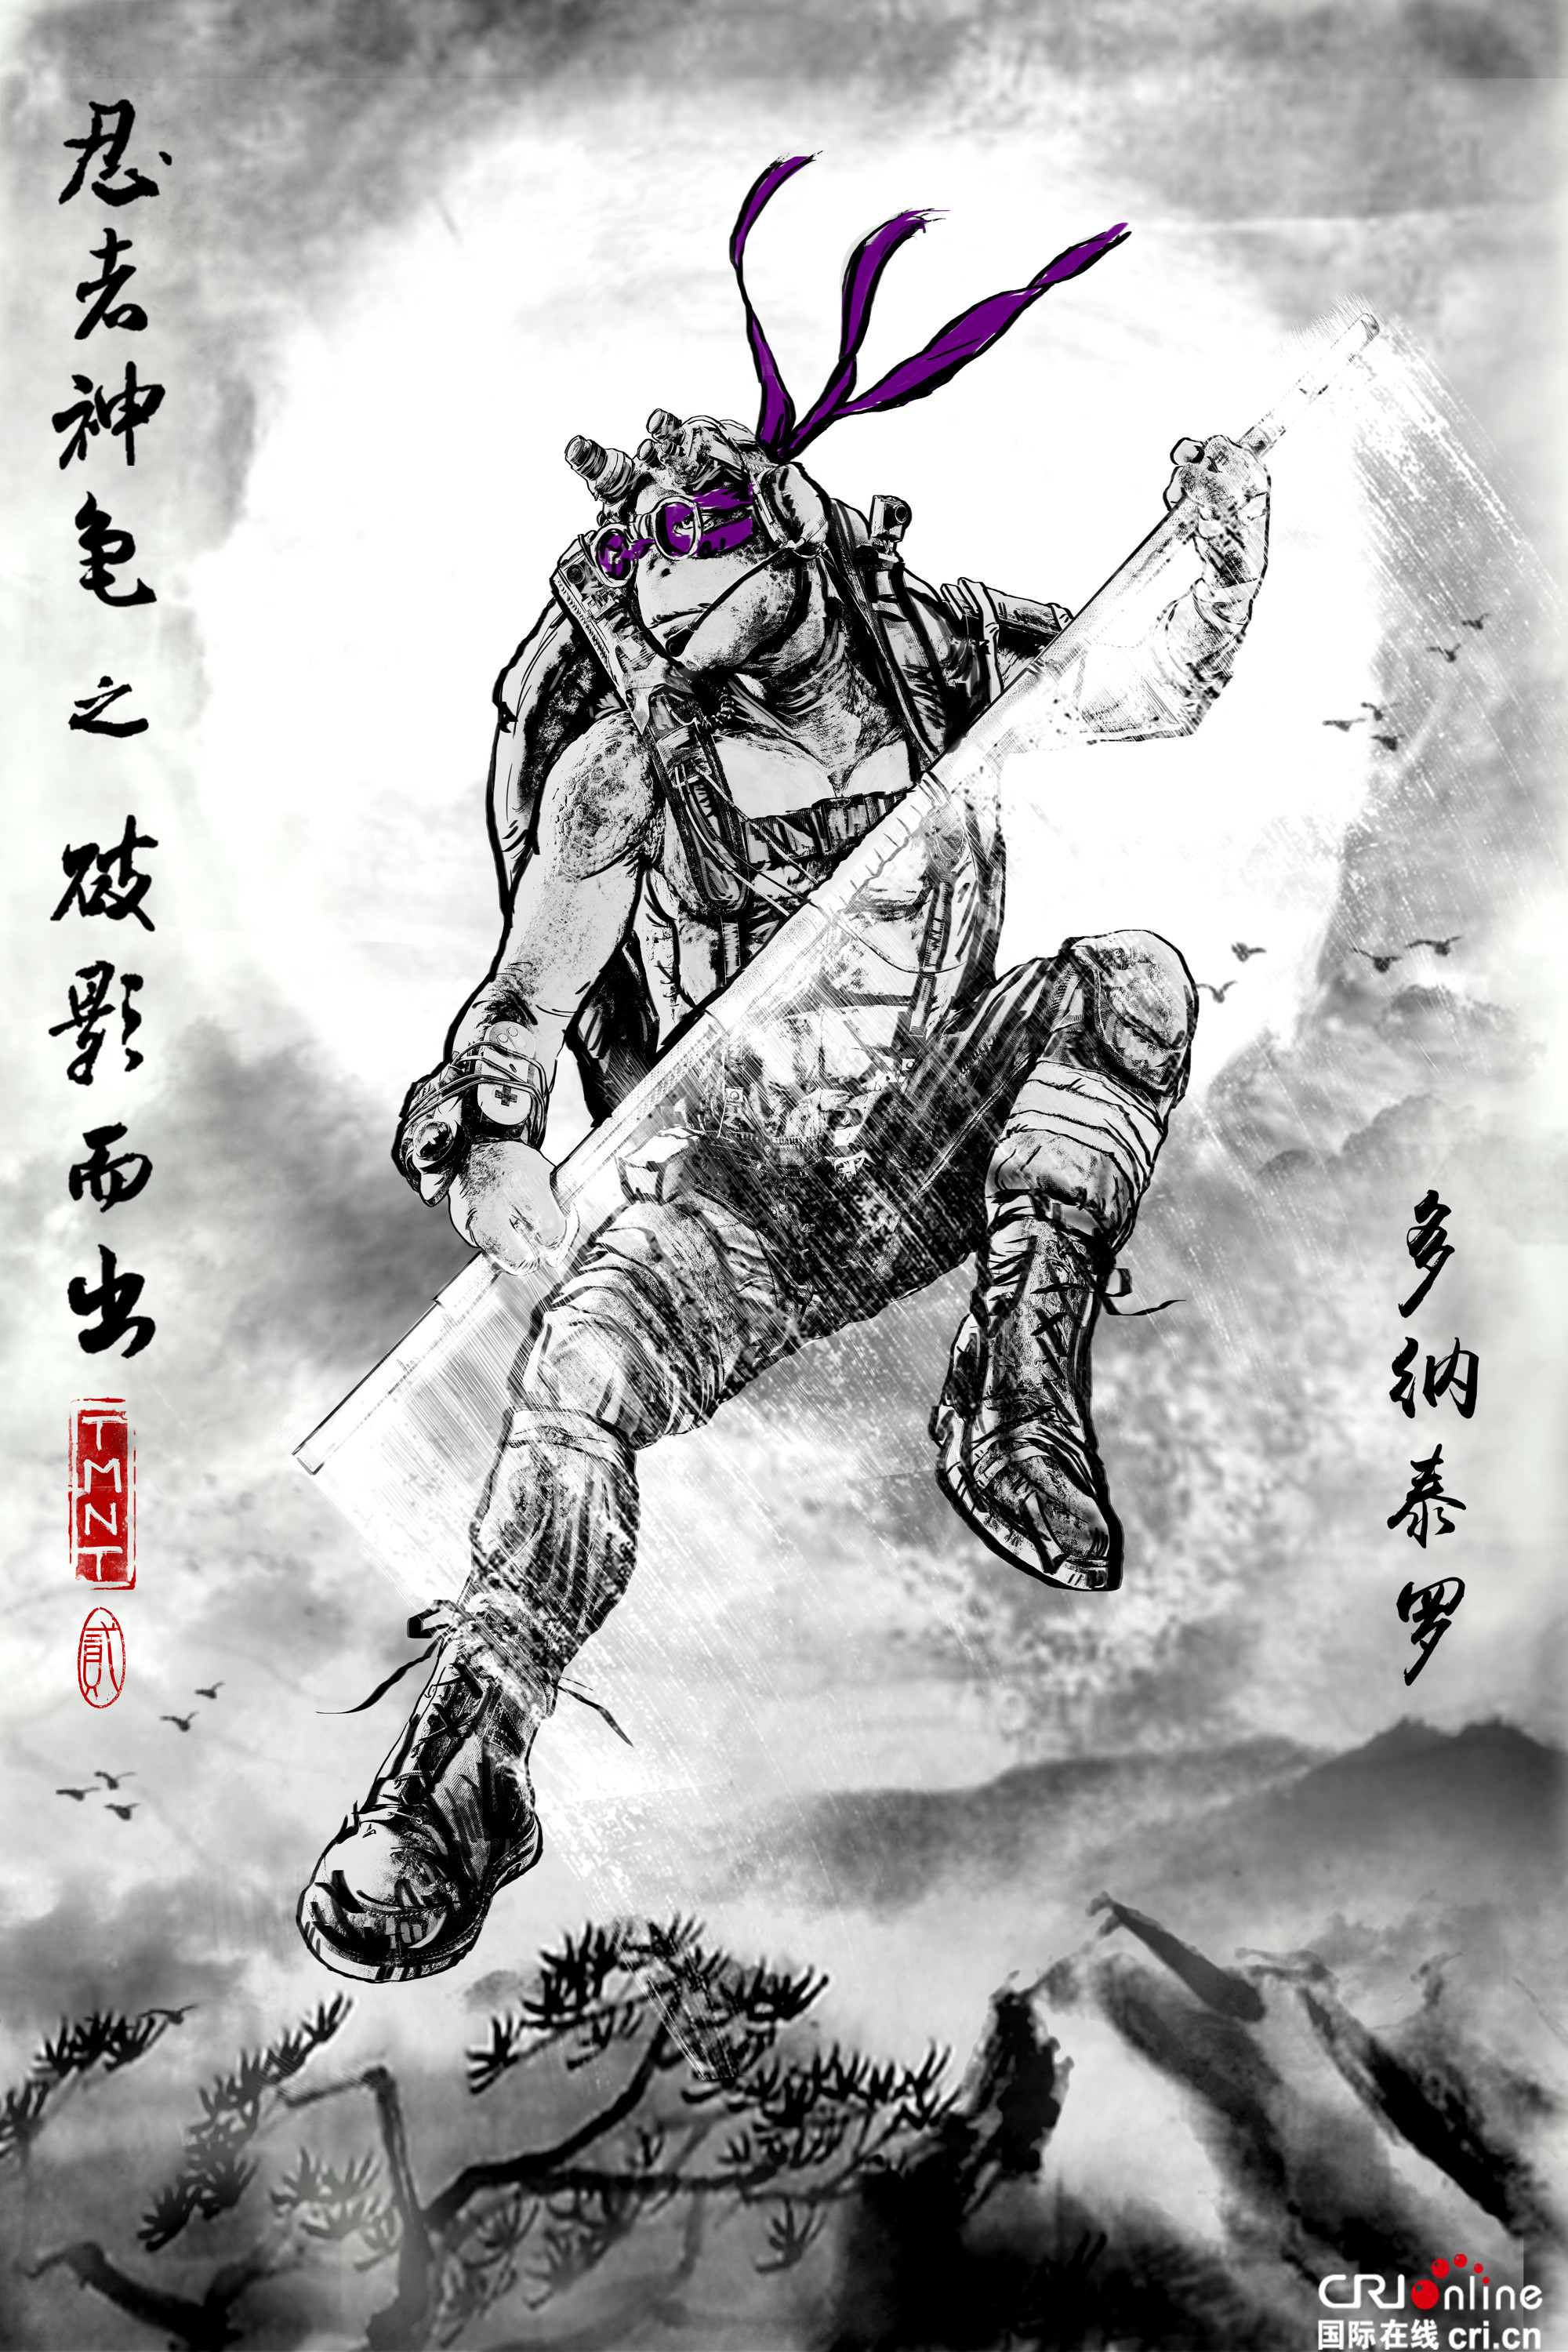 忍者神龟2发中国纪念海报顶级特效打造合家欢